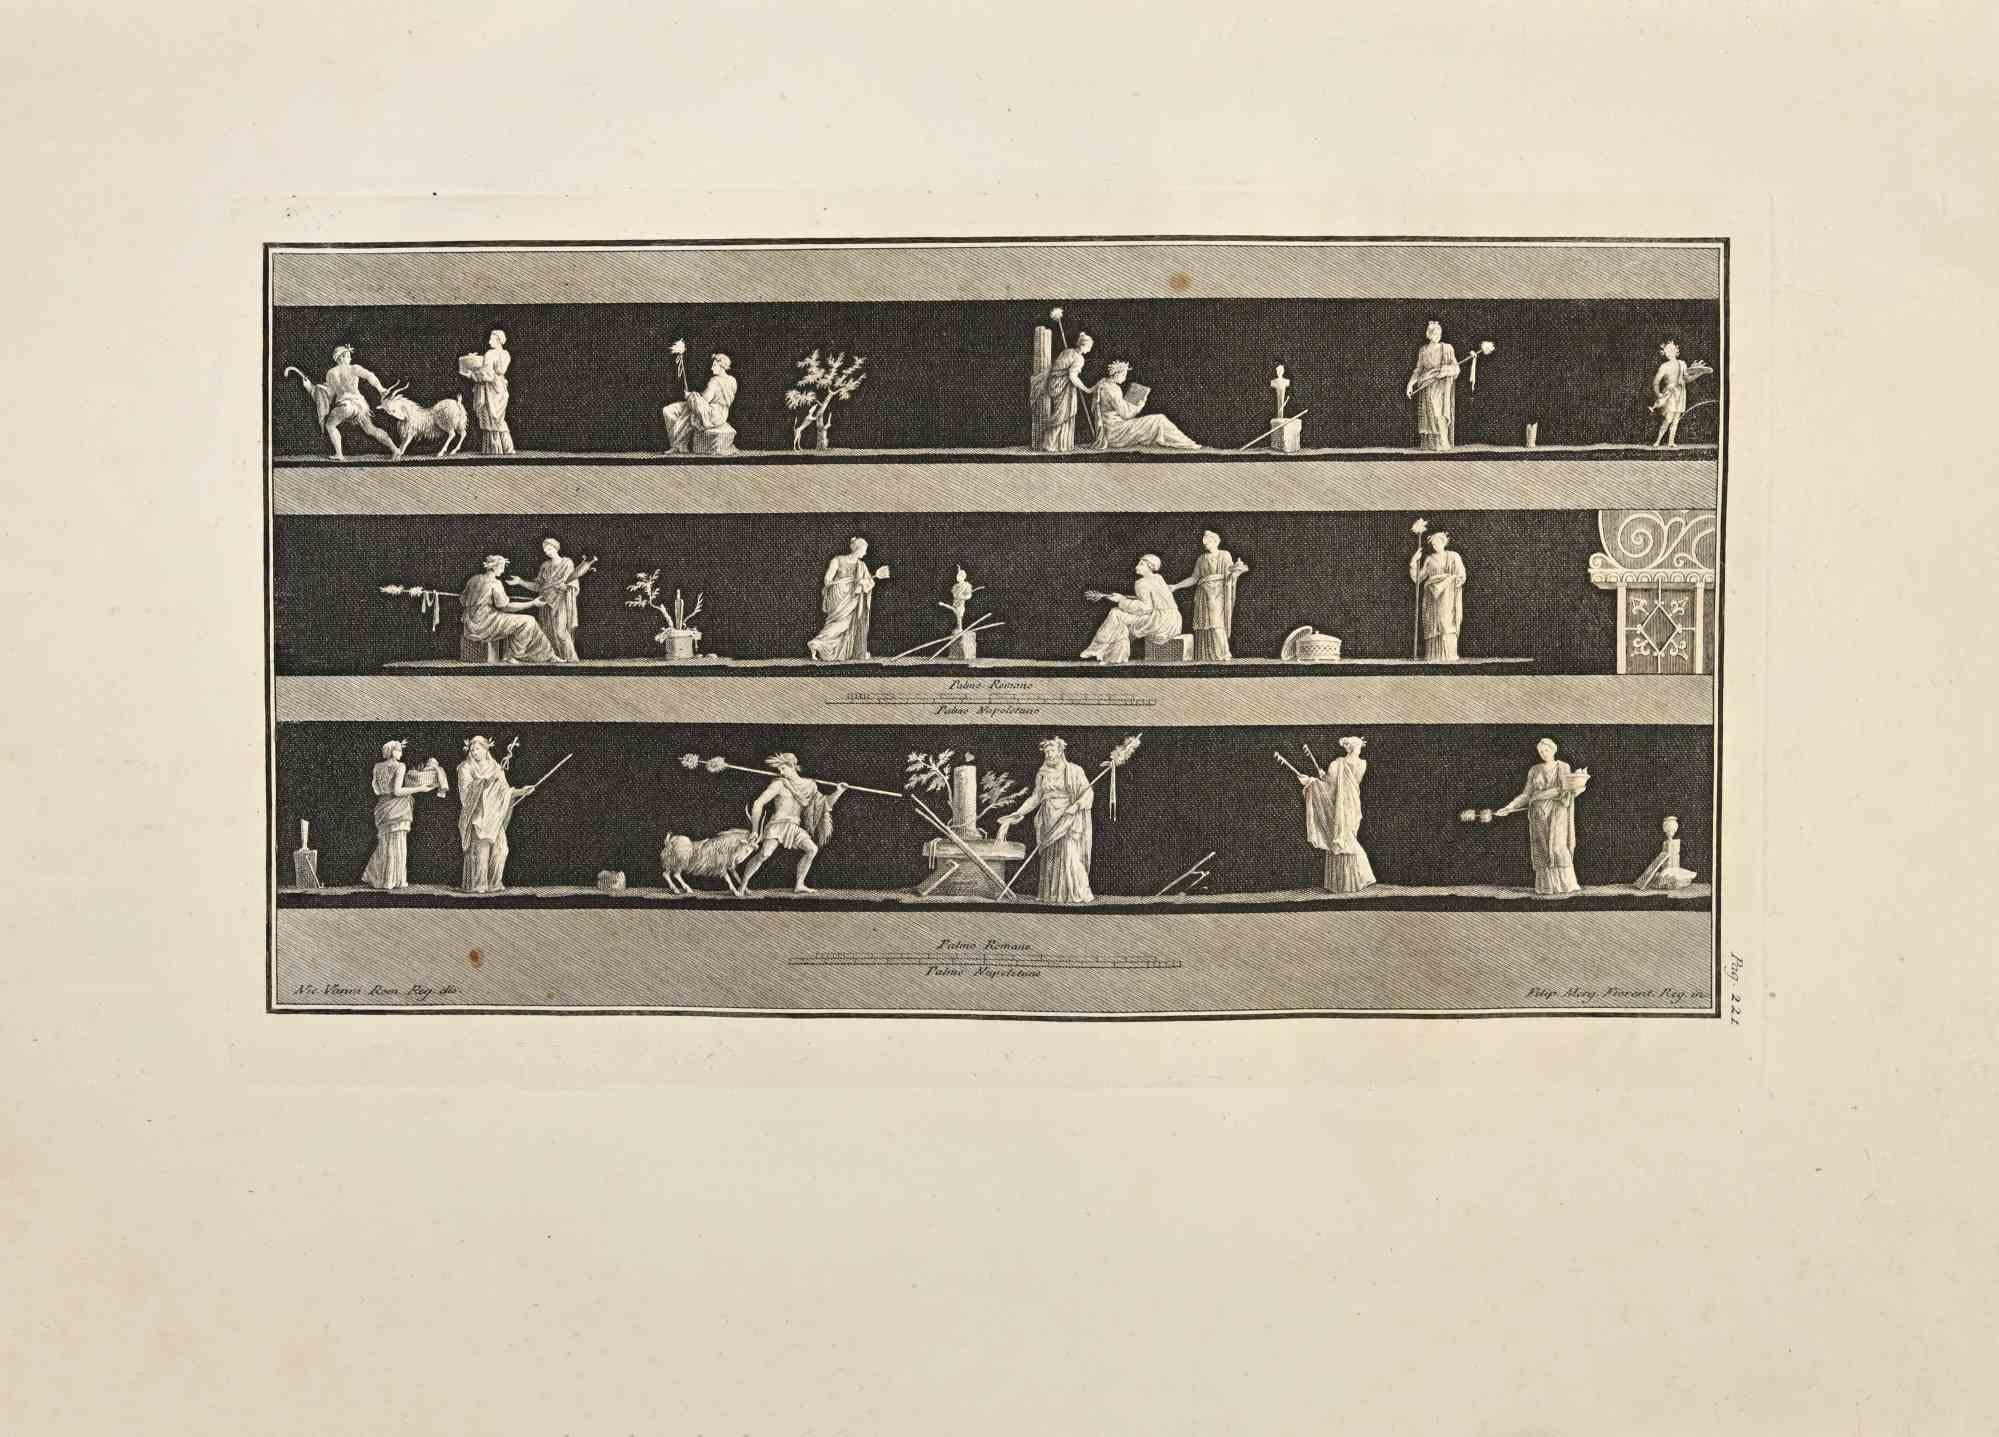 Das Bacchusfest "Bacchanalia" aus den "Altertümern von Herculaneum" ist eine Radierung auf Papier von Filippo Morghen aus dem 18. Jahrhundert.

Signiert auf der Platte.

Guter Zustand mit einigen Faltungen.

Die Radierung gehört zu der Druckserie